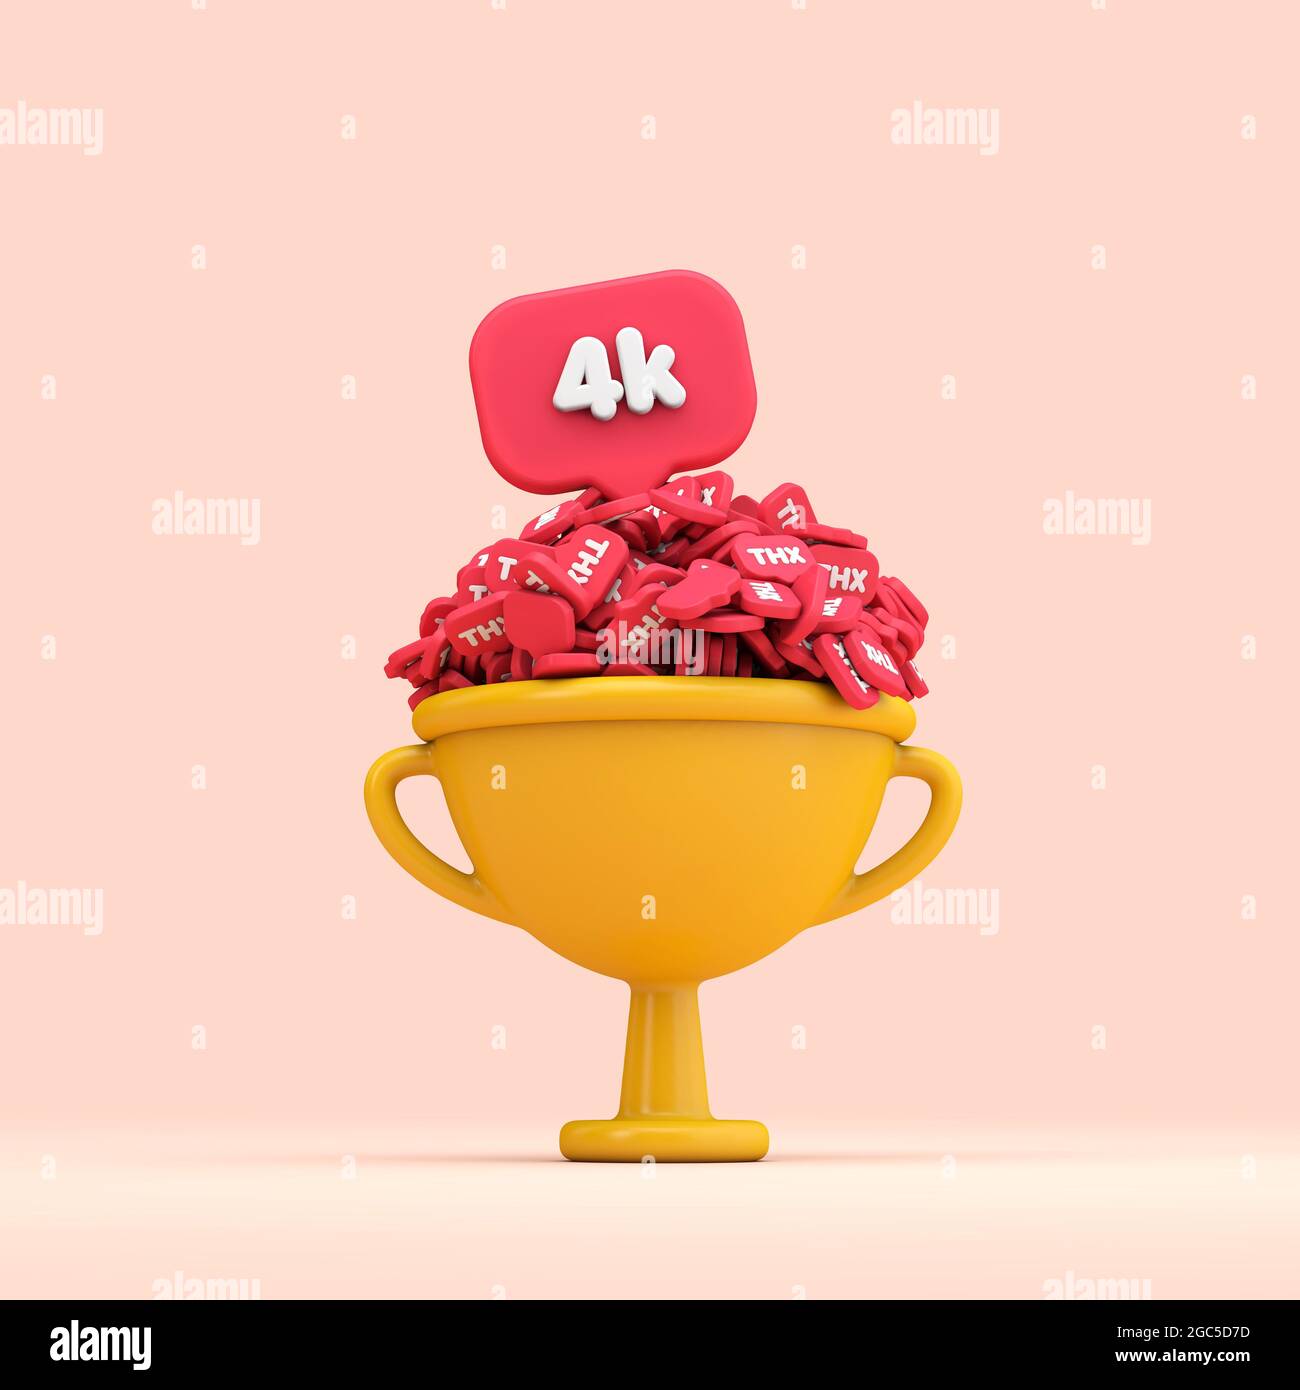 Vielen Dank, dass Sie die Trophäe für die 4k-Fans von Social Media feiern. 3D-Rendering Stockfoto